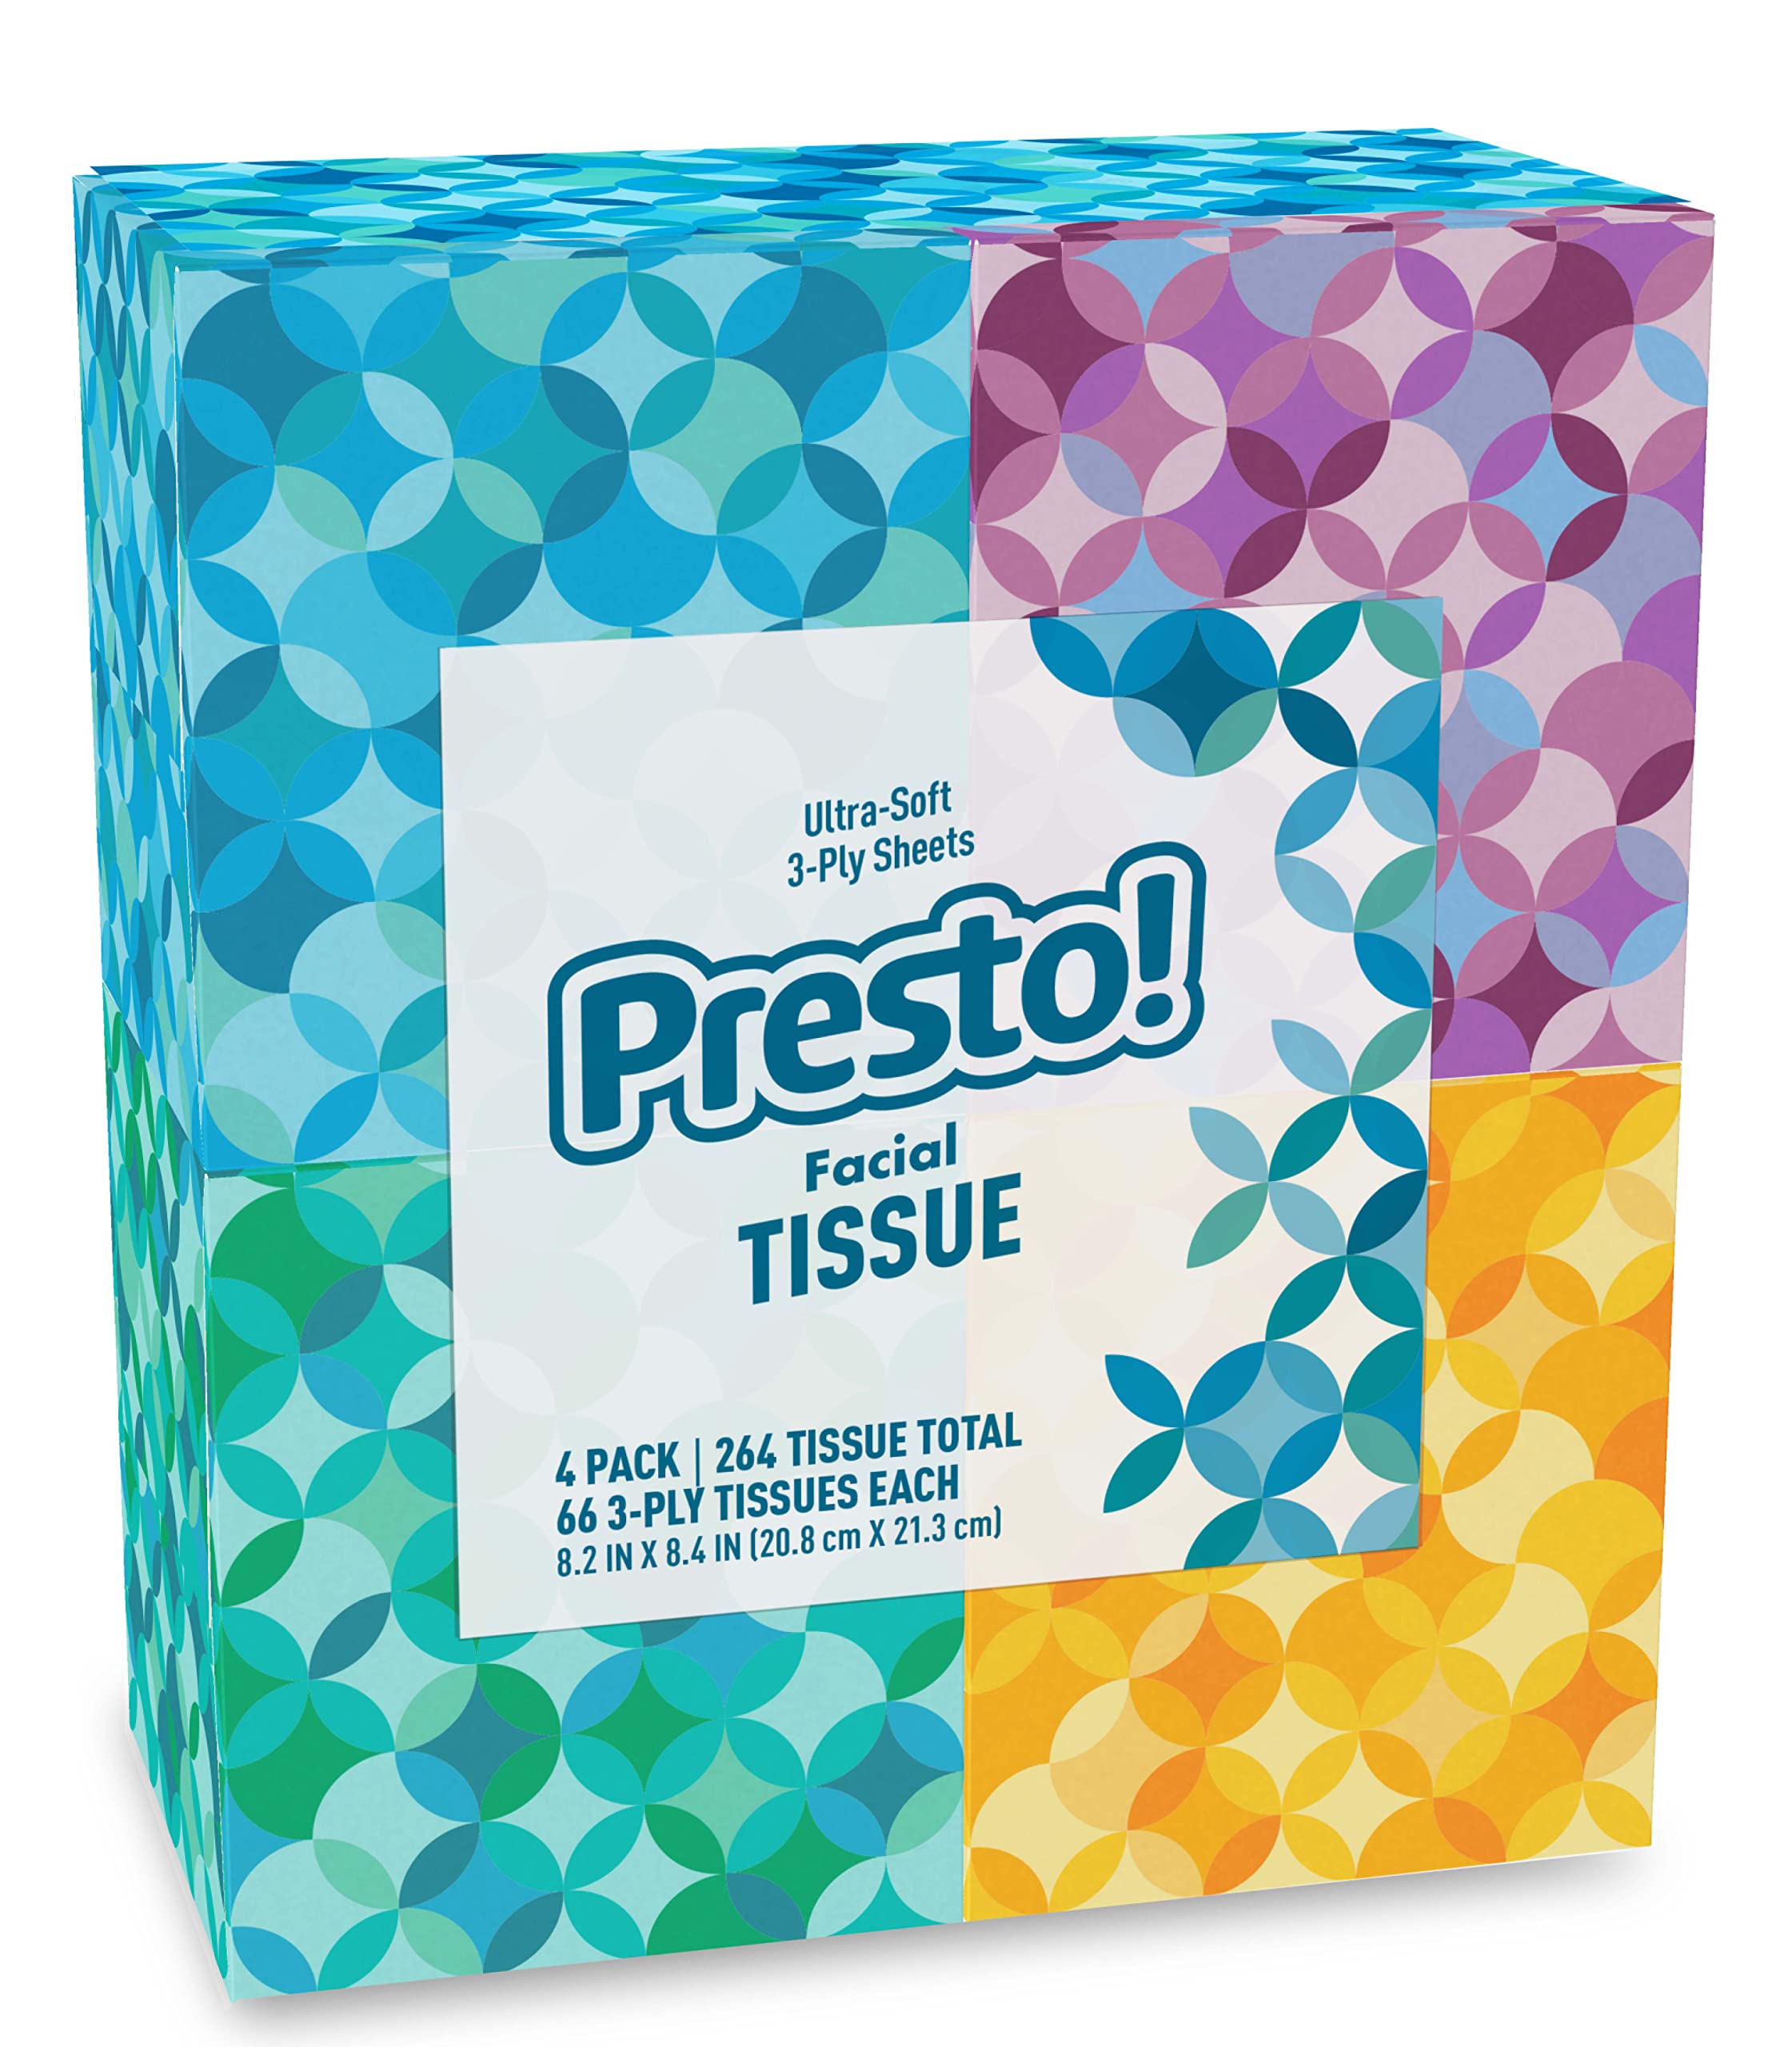 Amazon Brand - Presto! Ultra-Soft 3-Ply Premium Facial Tissues, 66 Tissues per Box, 4 Cube Boxes (264 total)